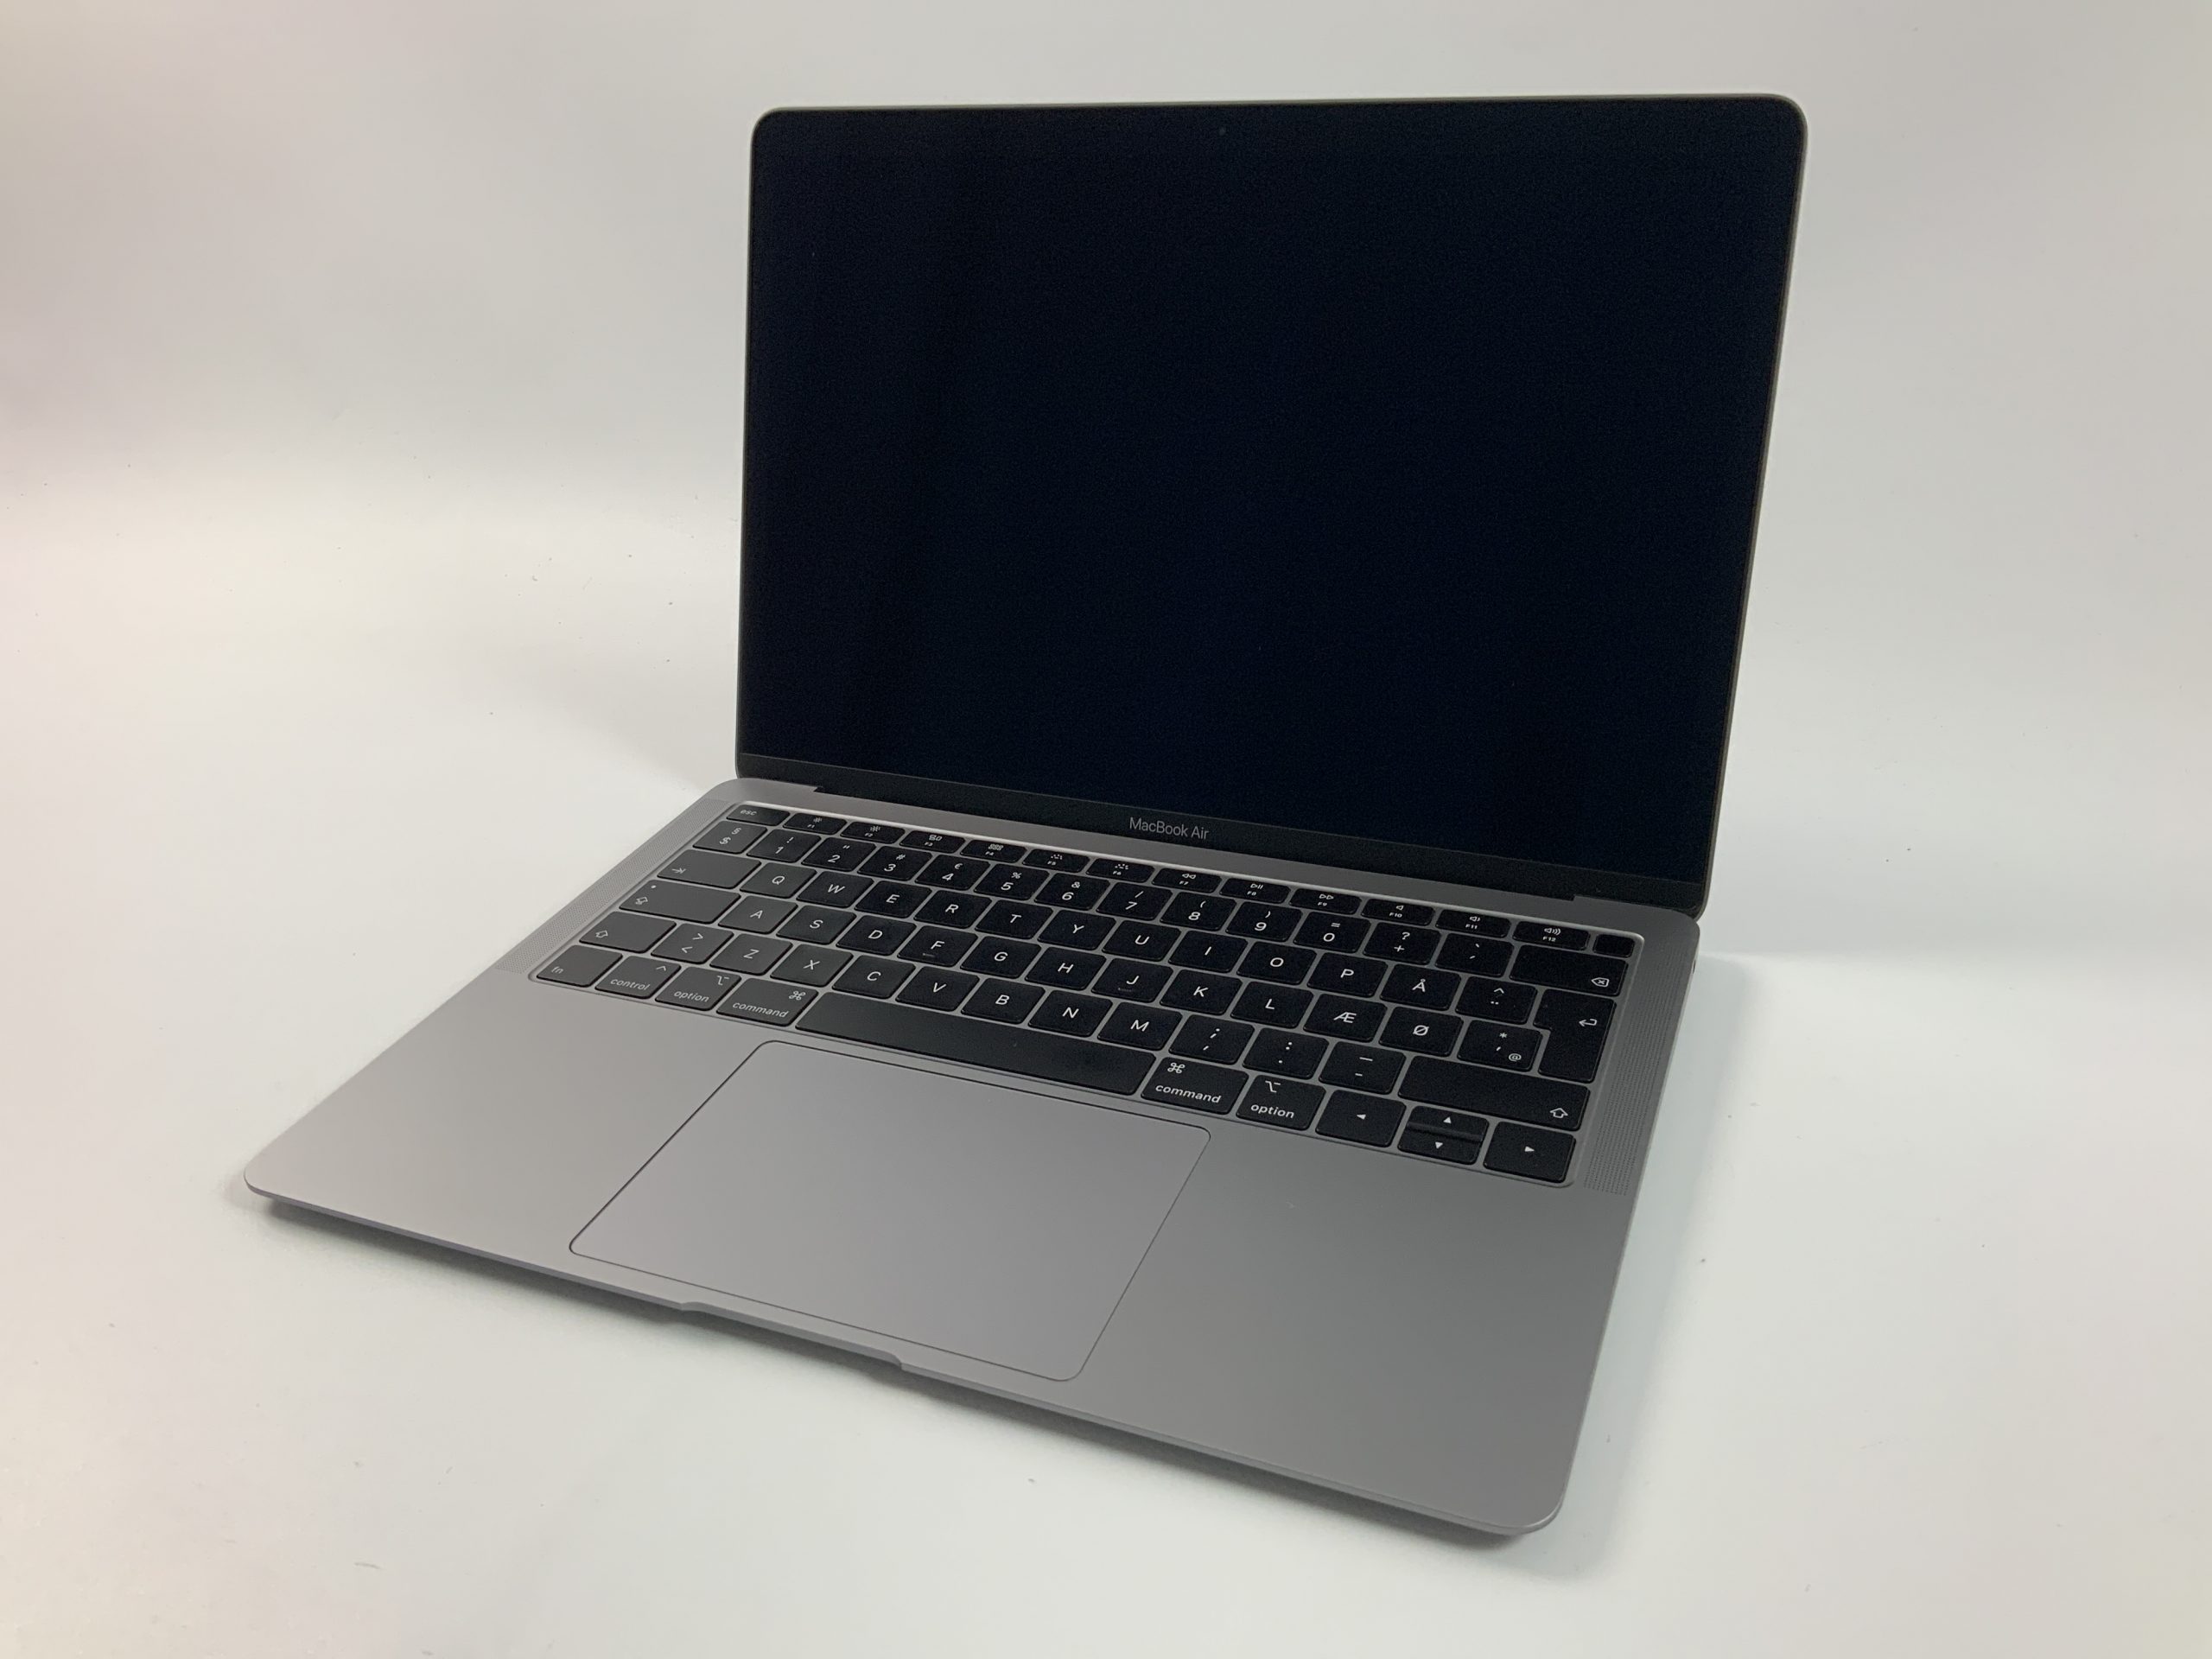 MacBook Air 13" Mid 2019 (Intel Core i5 1.6 GHz 8 GB RAM 128 GB SSD), Space Gray, Intel Core i5 1.6 GHz, 8 GB RAM, 128 GB SSD, bild 1